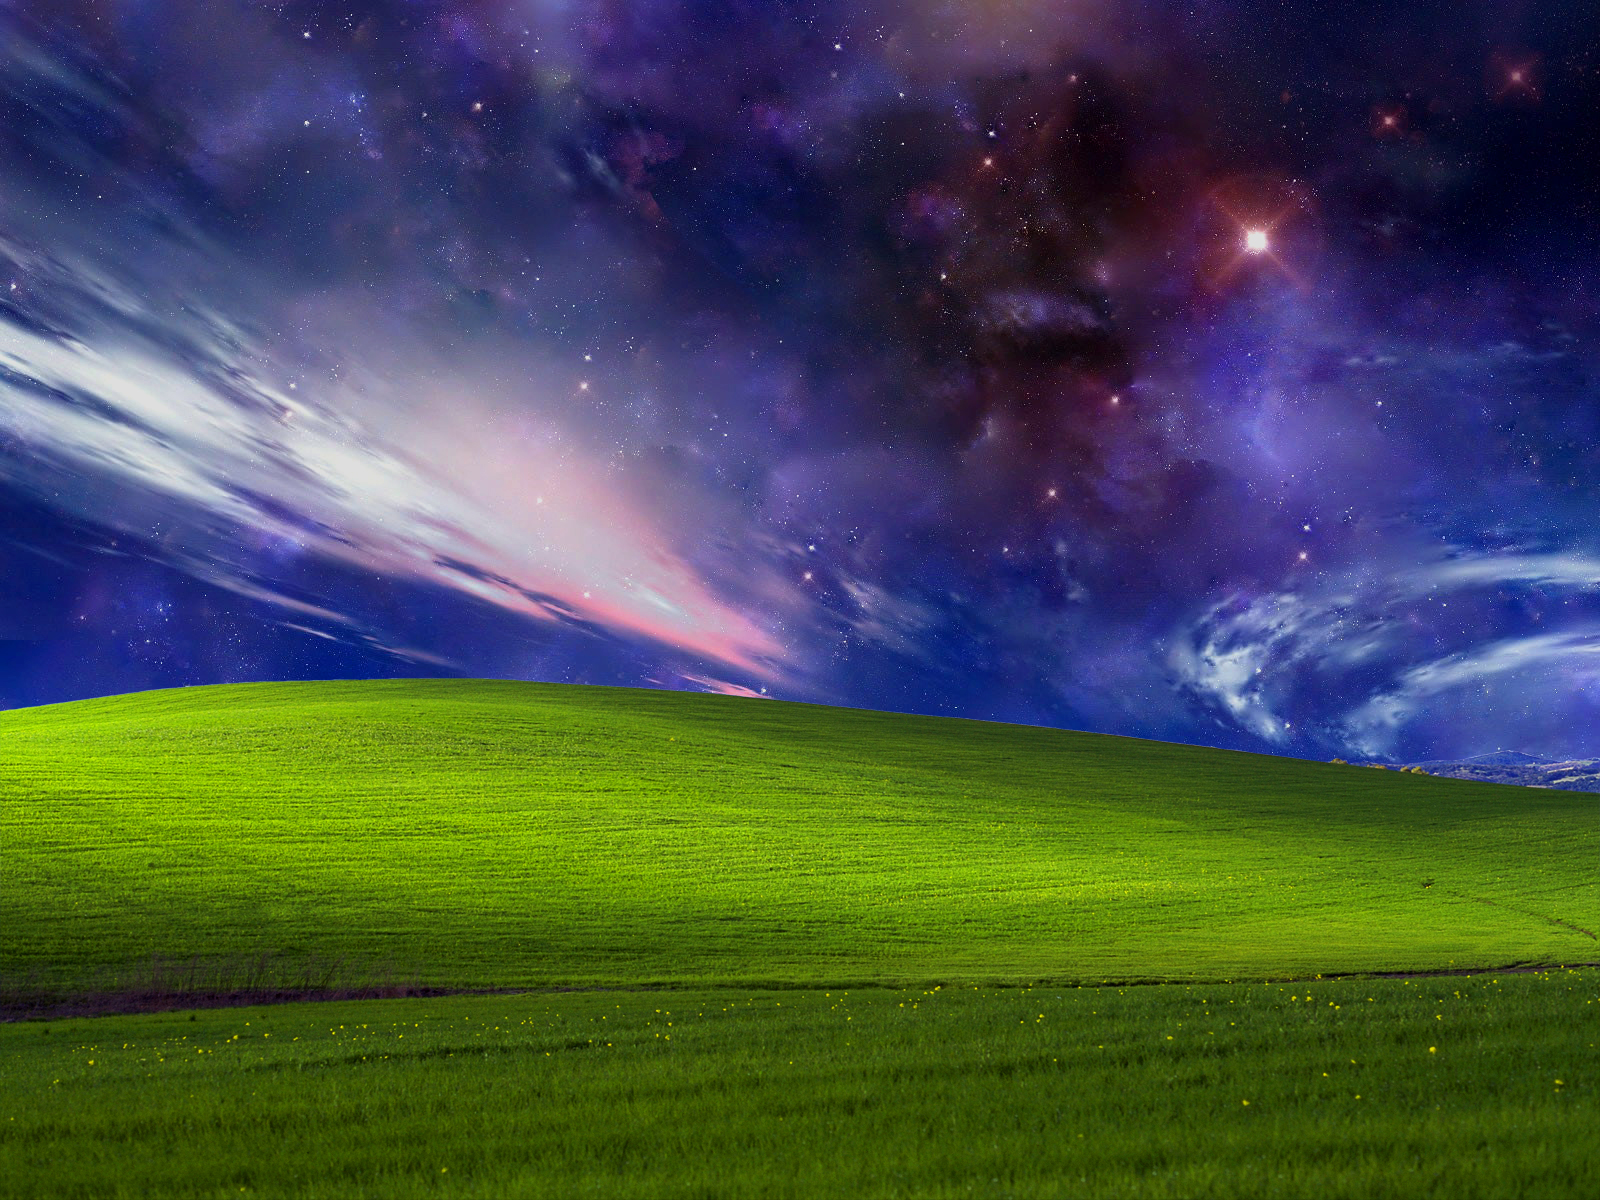 Hình nền Galaxy Windows XP HD: Quay trở lại với thời gian đầu của thiết bị tính cá nhân, đem lại cảm xúc hoài niệm với hình nền Galaxy Windows XP HD. Chúng tôi cập nhật liên tục những hình nền hiện đại và độc đáo nhất, giúp bạn nâng cao trải nghiệm sử dụng của mình.